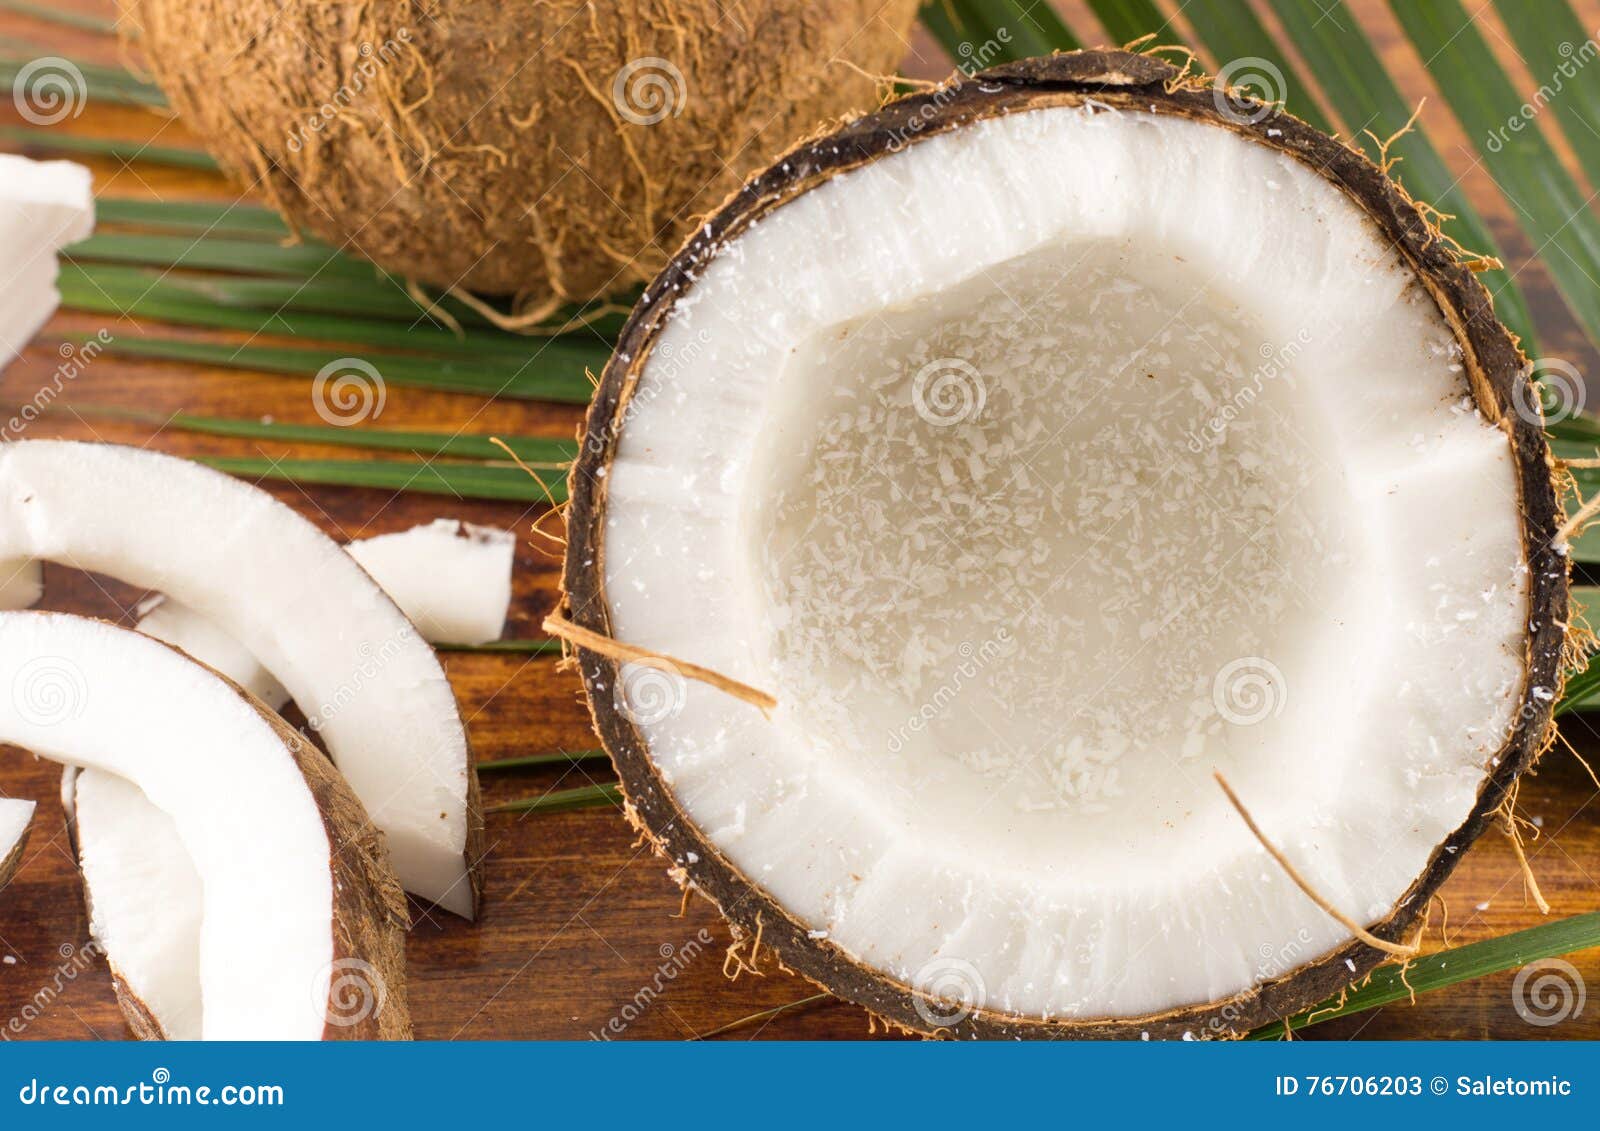 fresh coconuts in varios forms